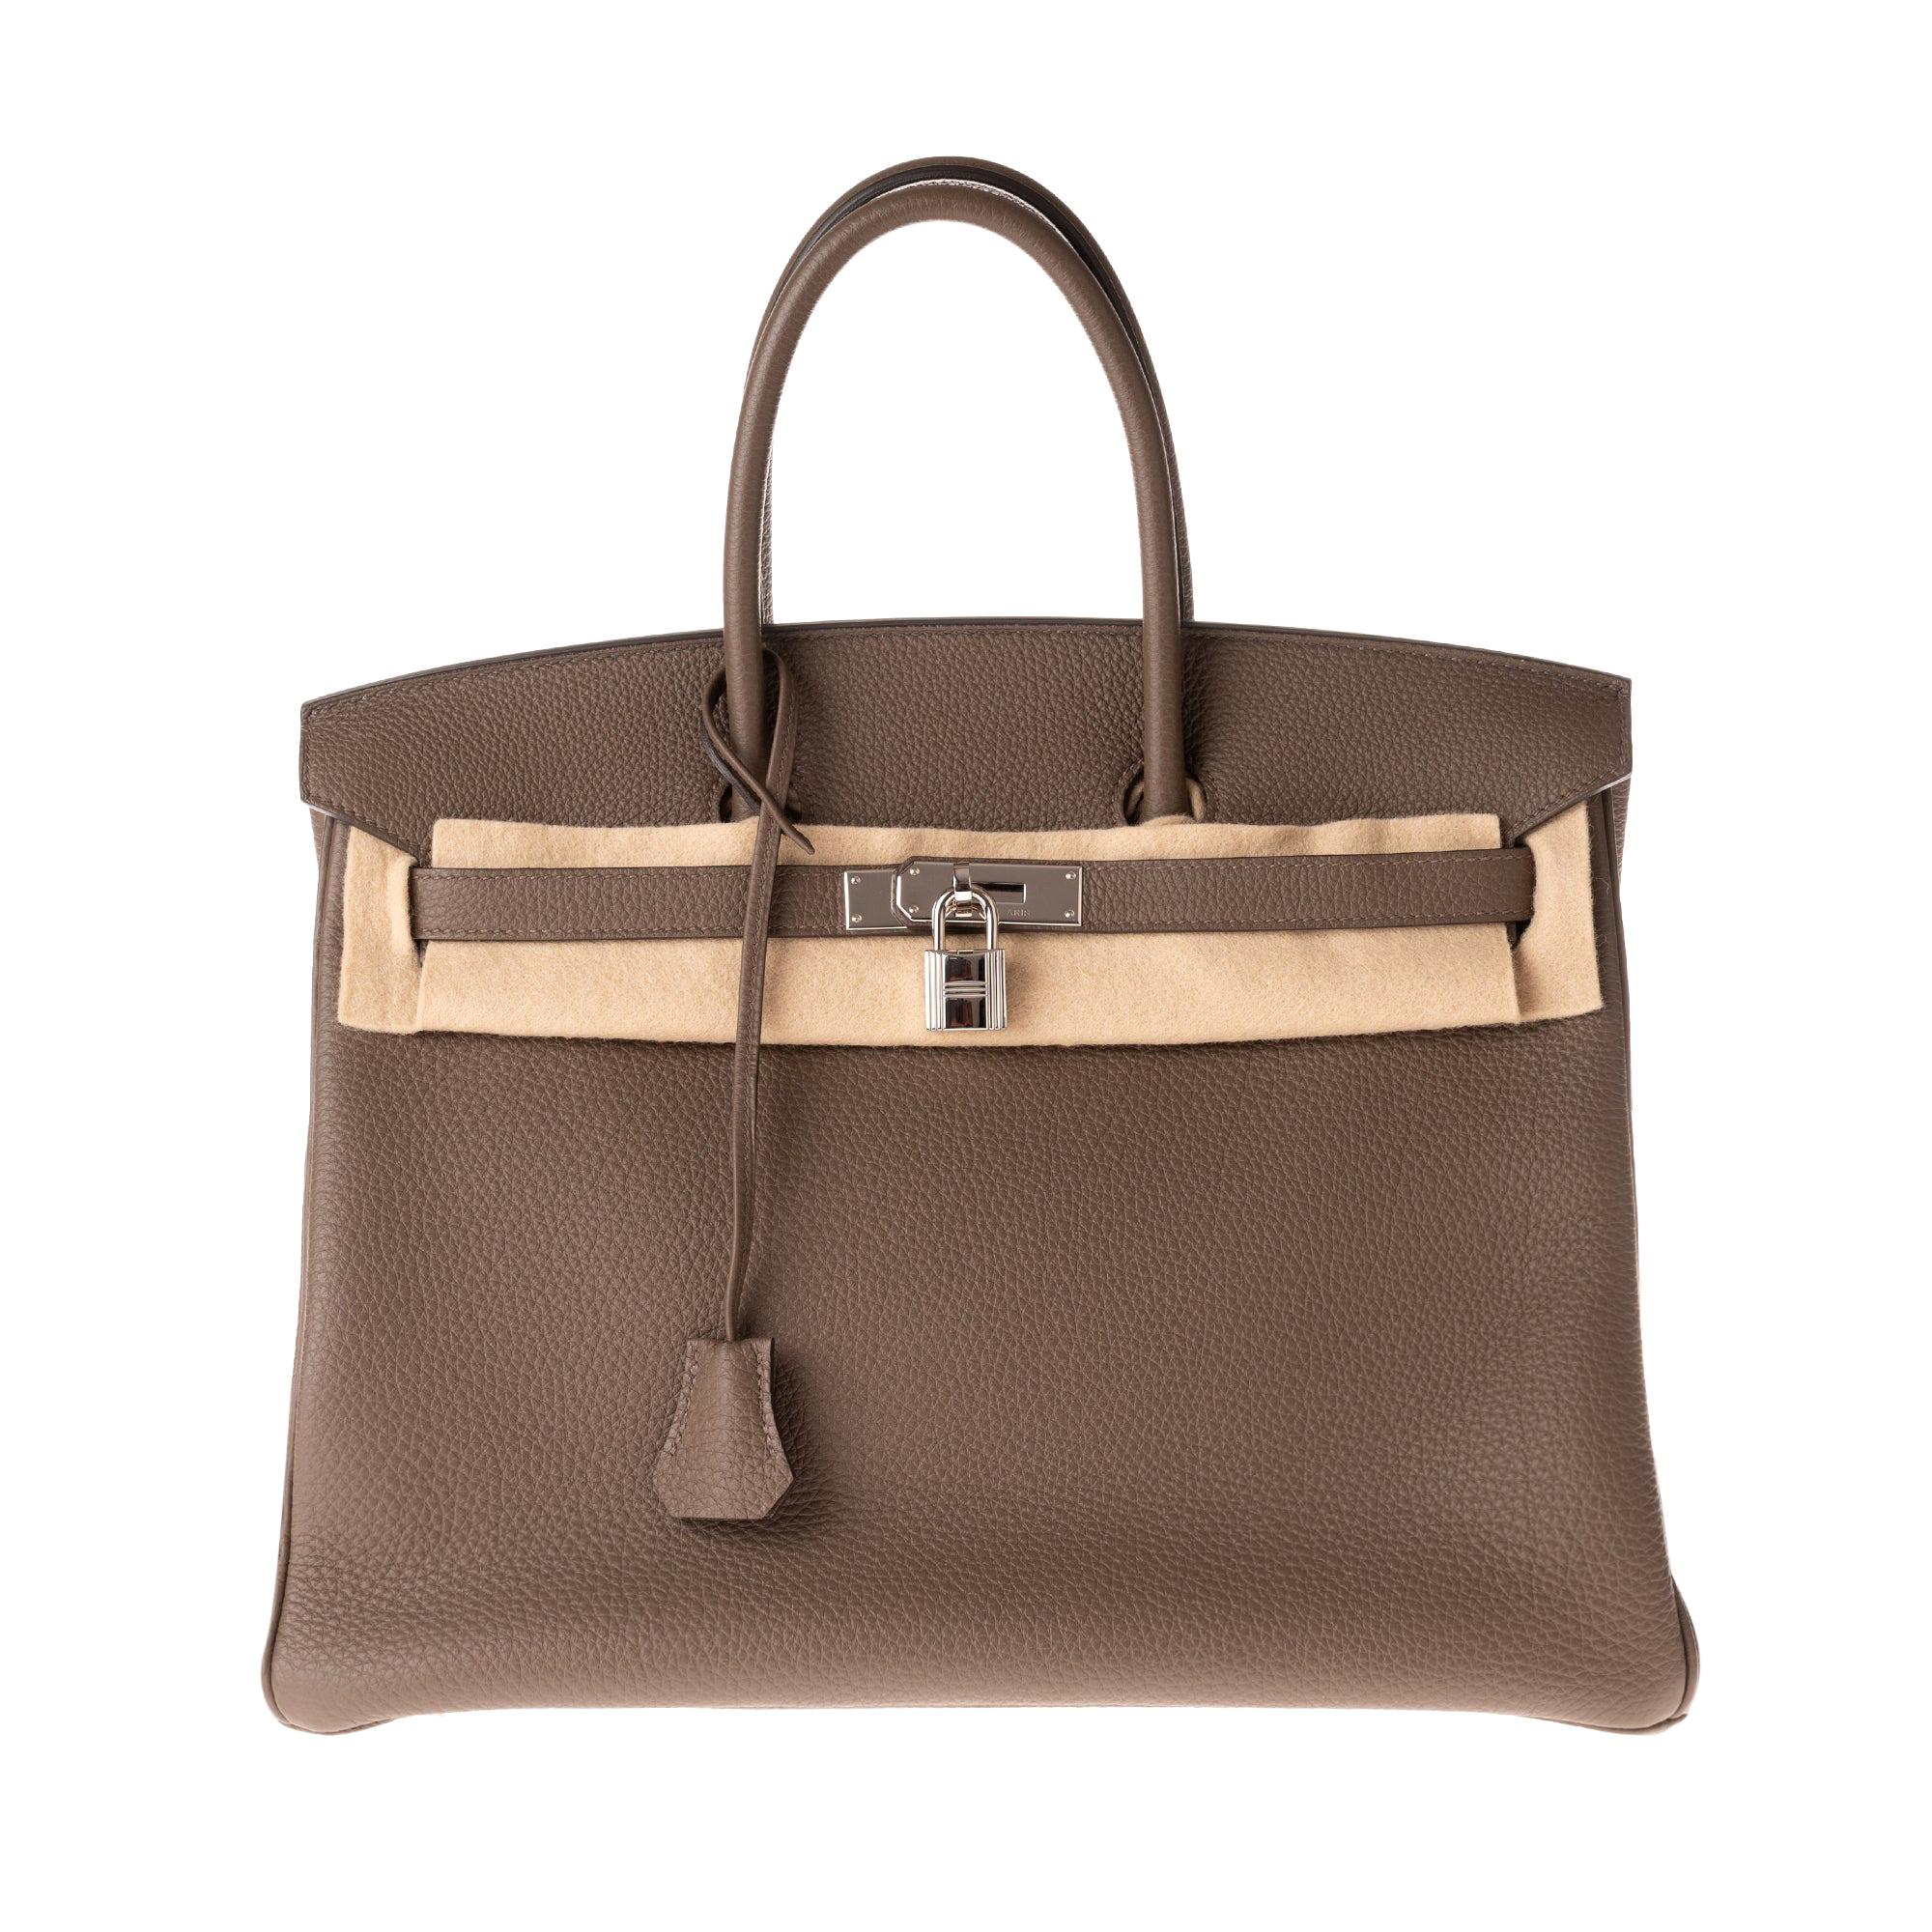 Hermès Birkin 35 Handtasche aus Togo-Leder in Taupe-Farbe und silberner Hardware!